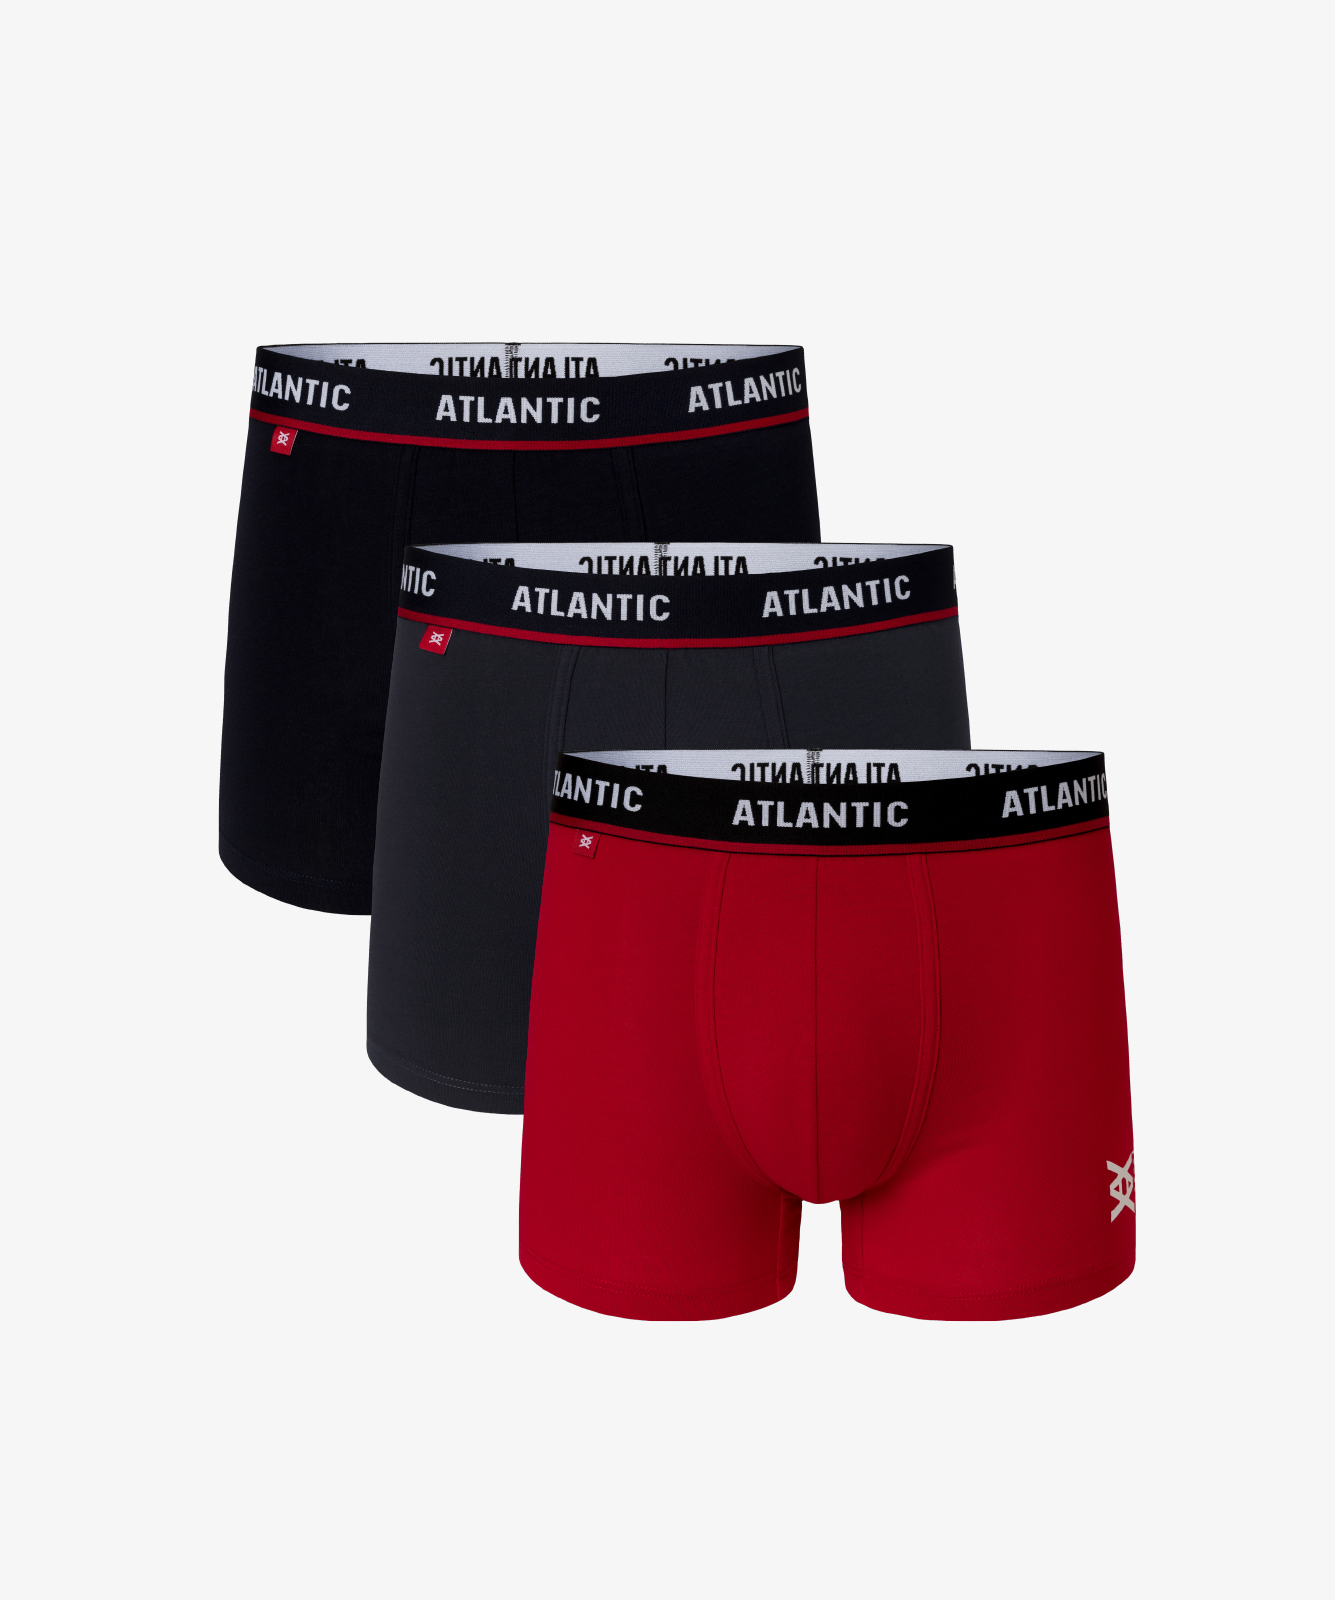 Мужские трусы шорты Atlantic, набор из 3 шт., хлопок, черные + графит + красные, 3MH-042